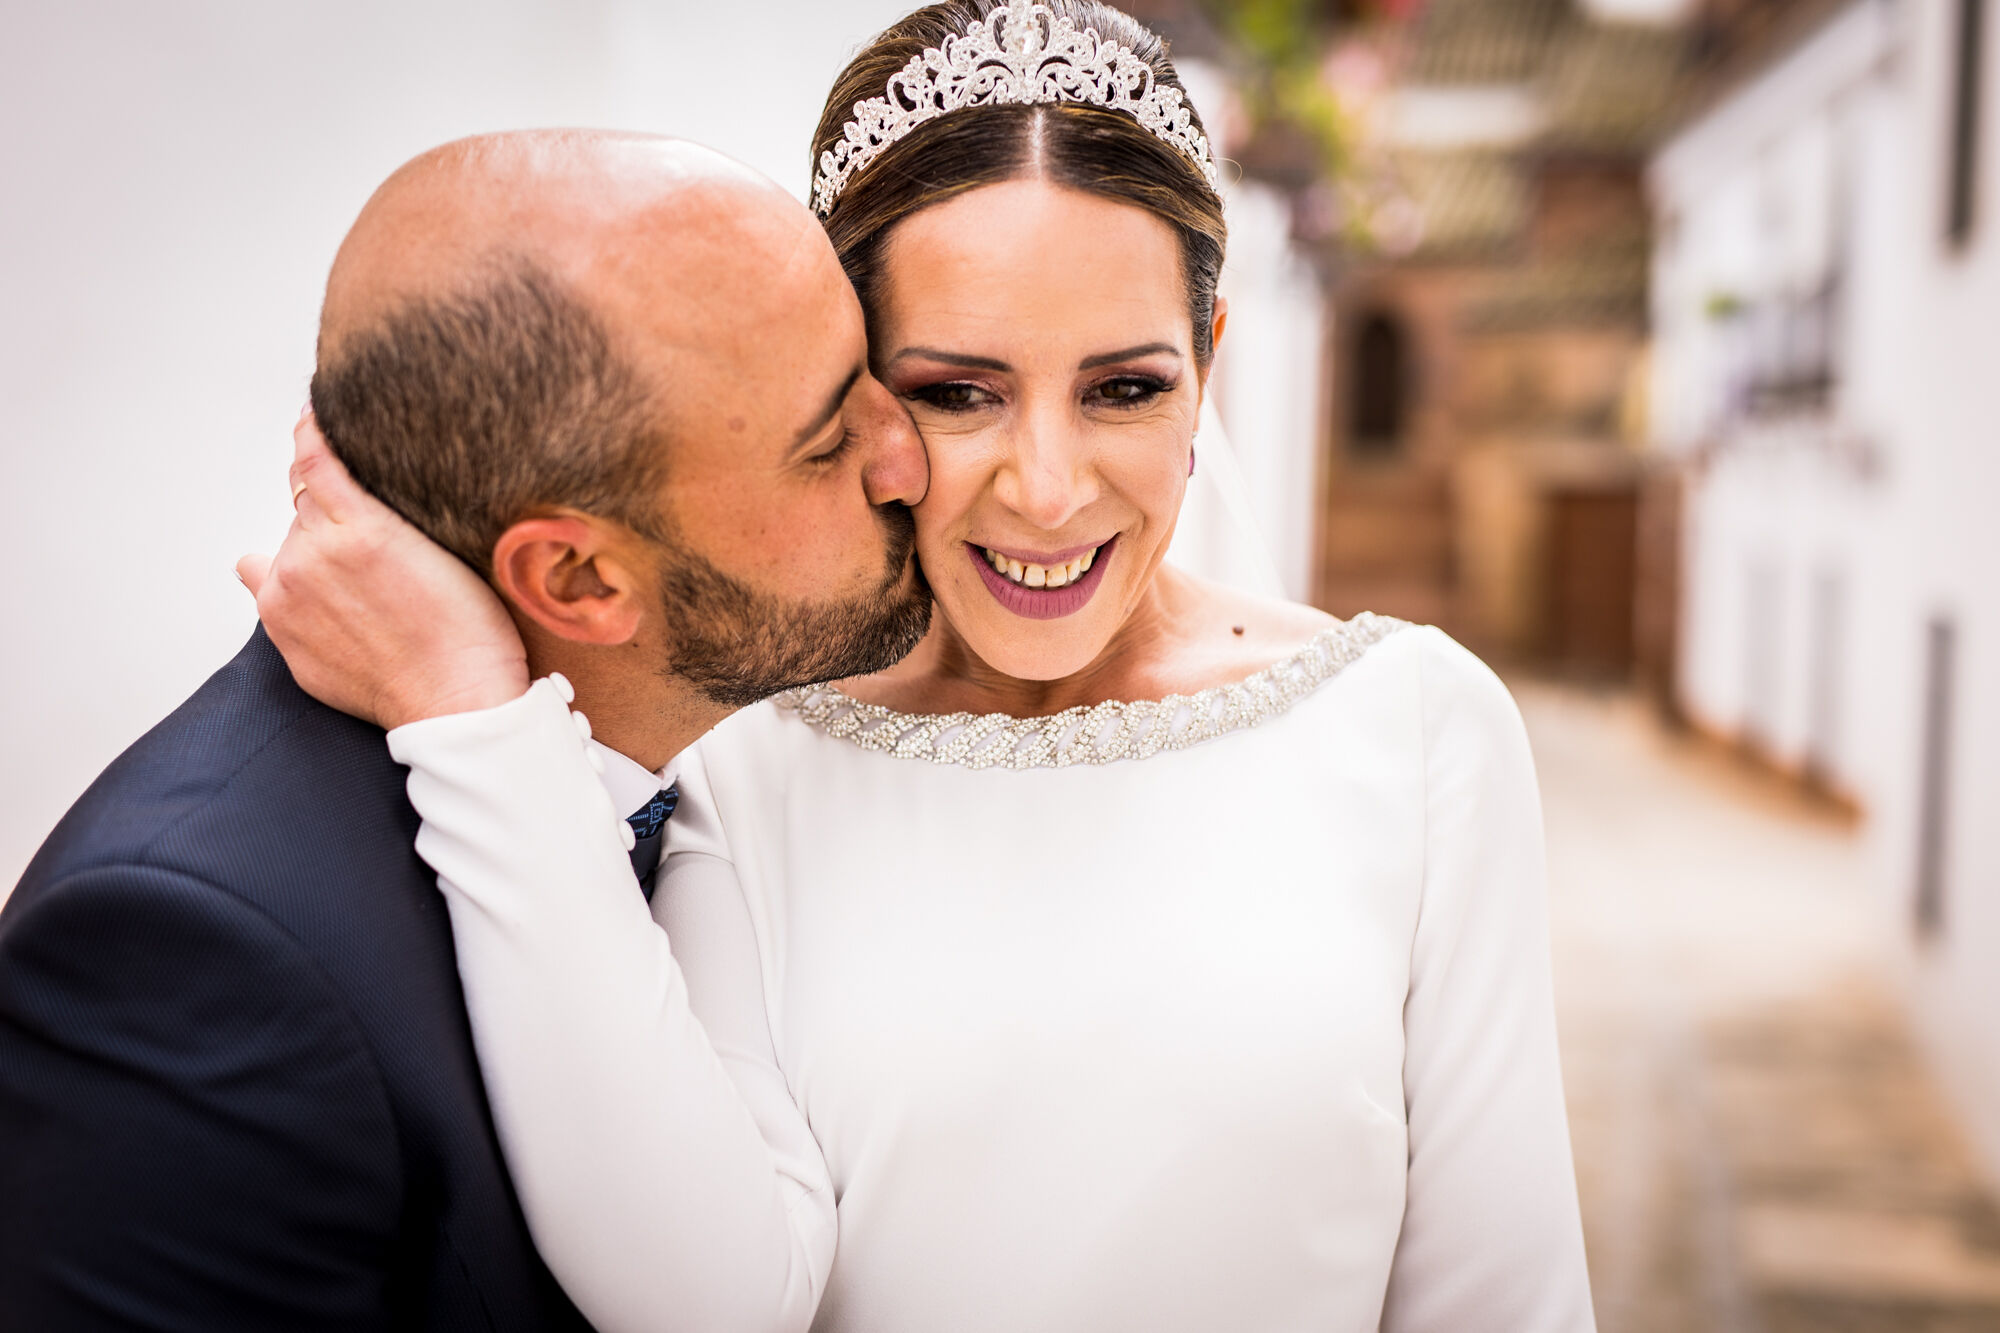 Albuera Morales Fotografía - Fotógrafo de bodas en Montoro - Fotógrafo de bodas en Córdoba y provincia - 1-16.jpg